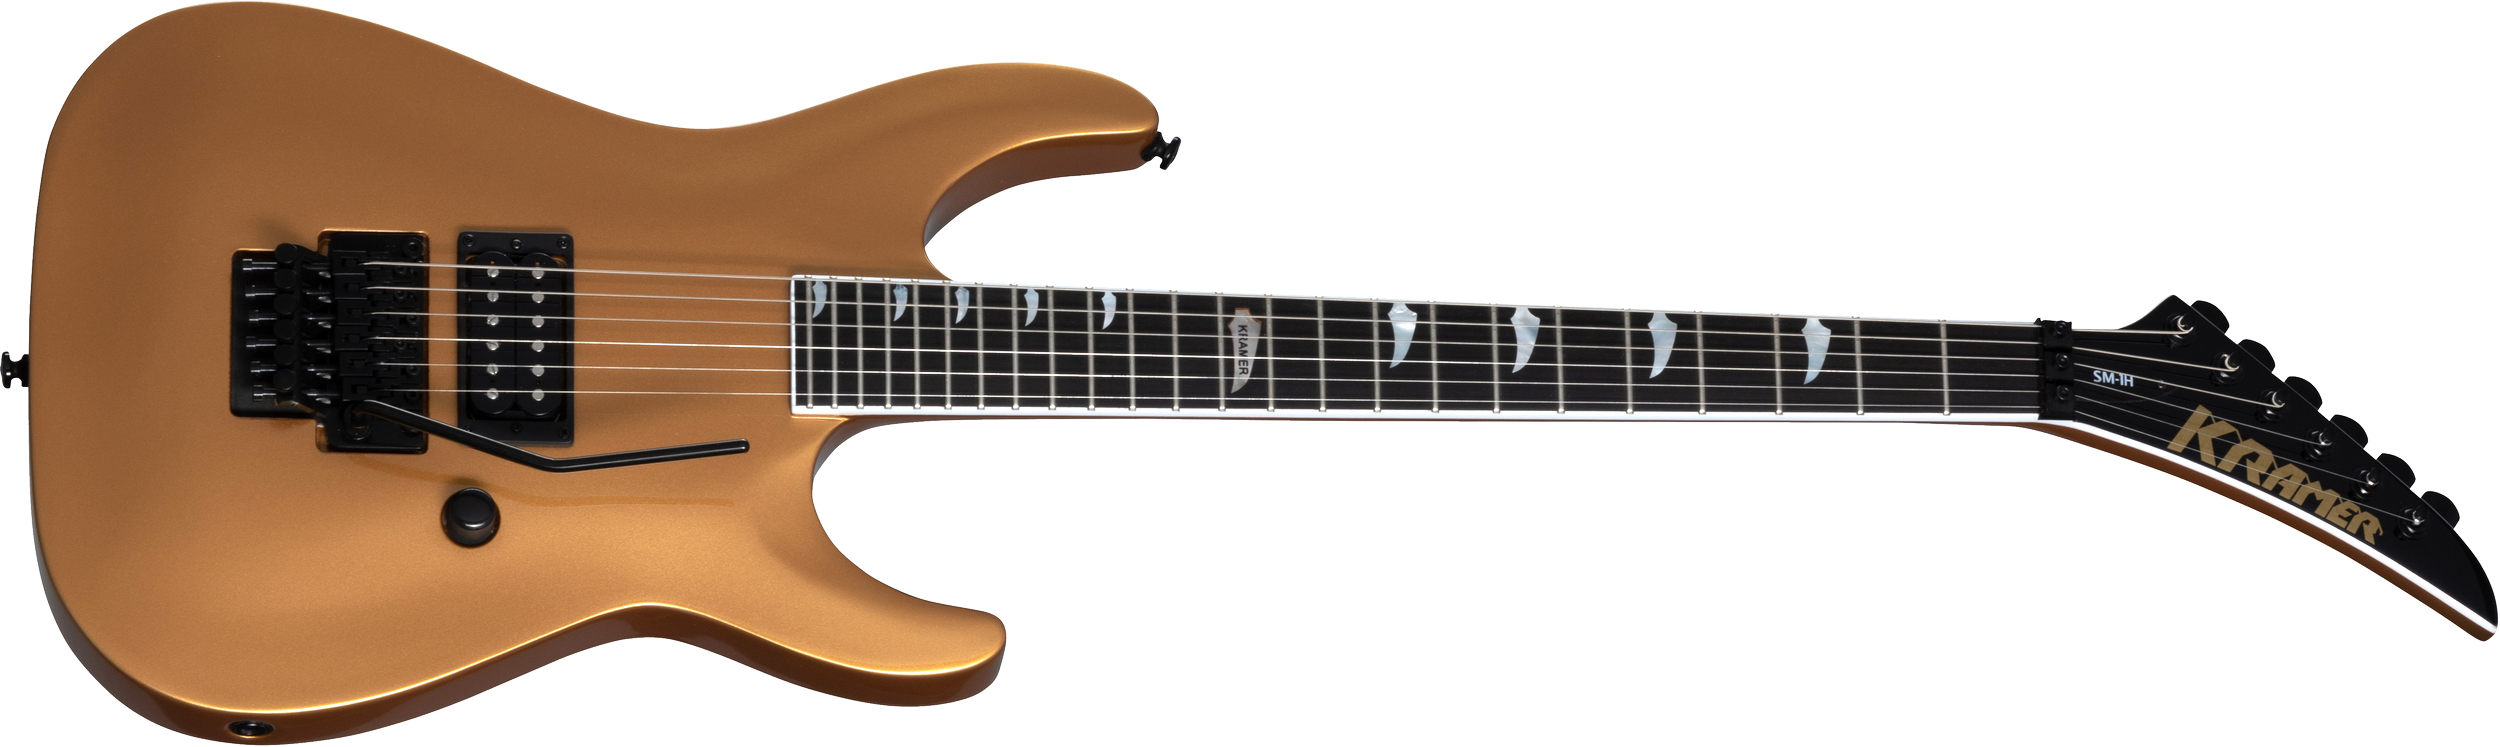 Kramer Guitars SM-1 H elektrisk gitar